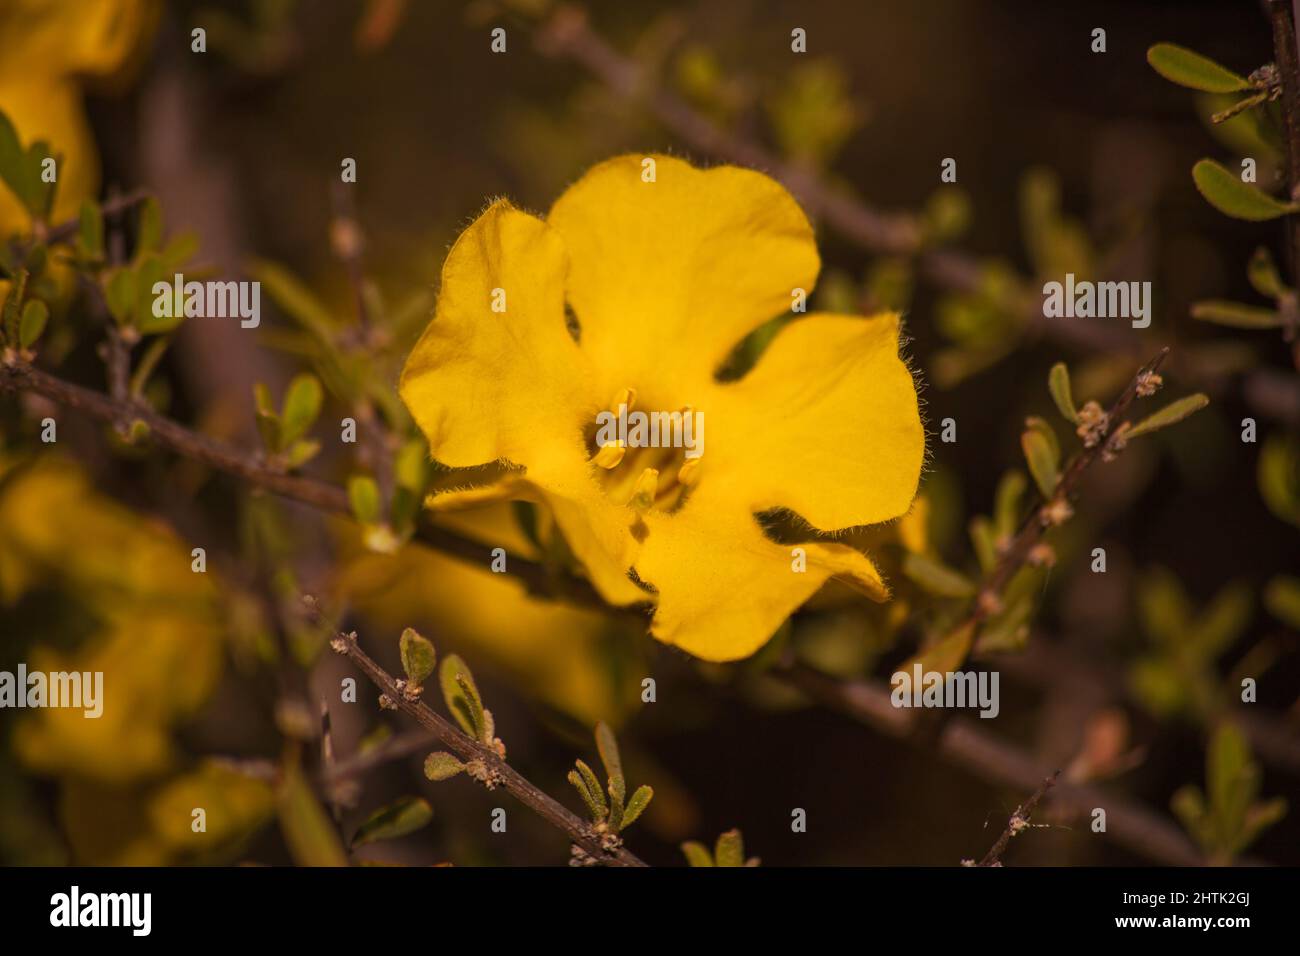 Flowers of the Karoo Gold Rhigozum obovatum Burch 14652 Stock Photo